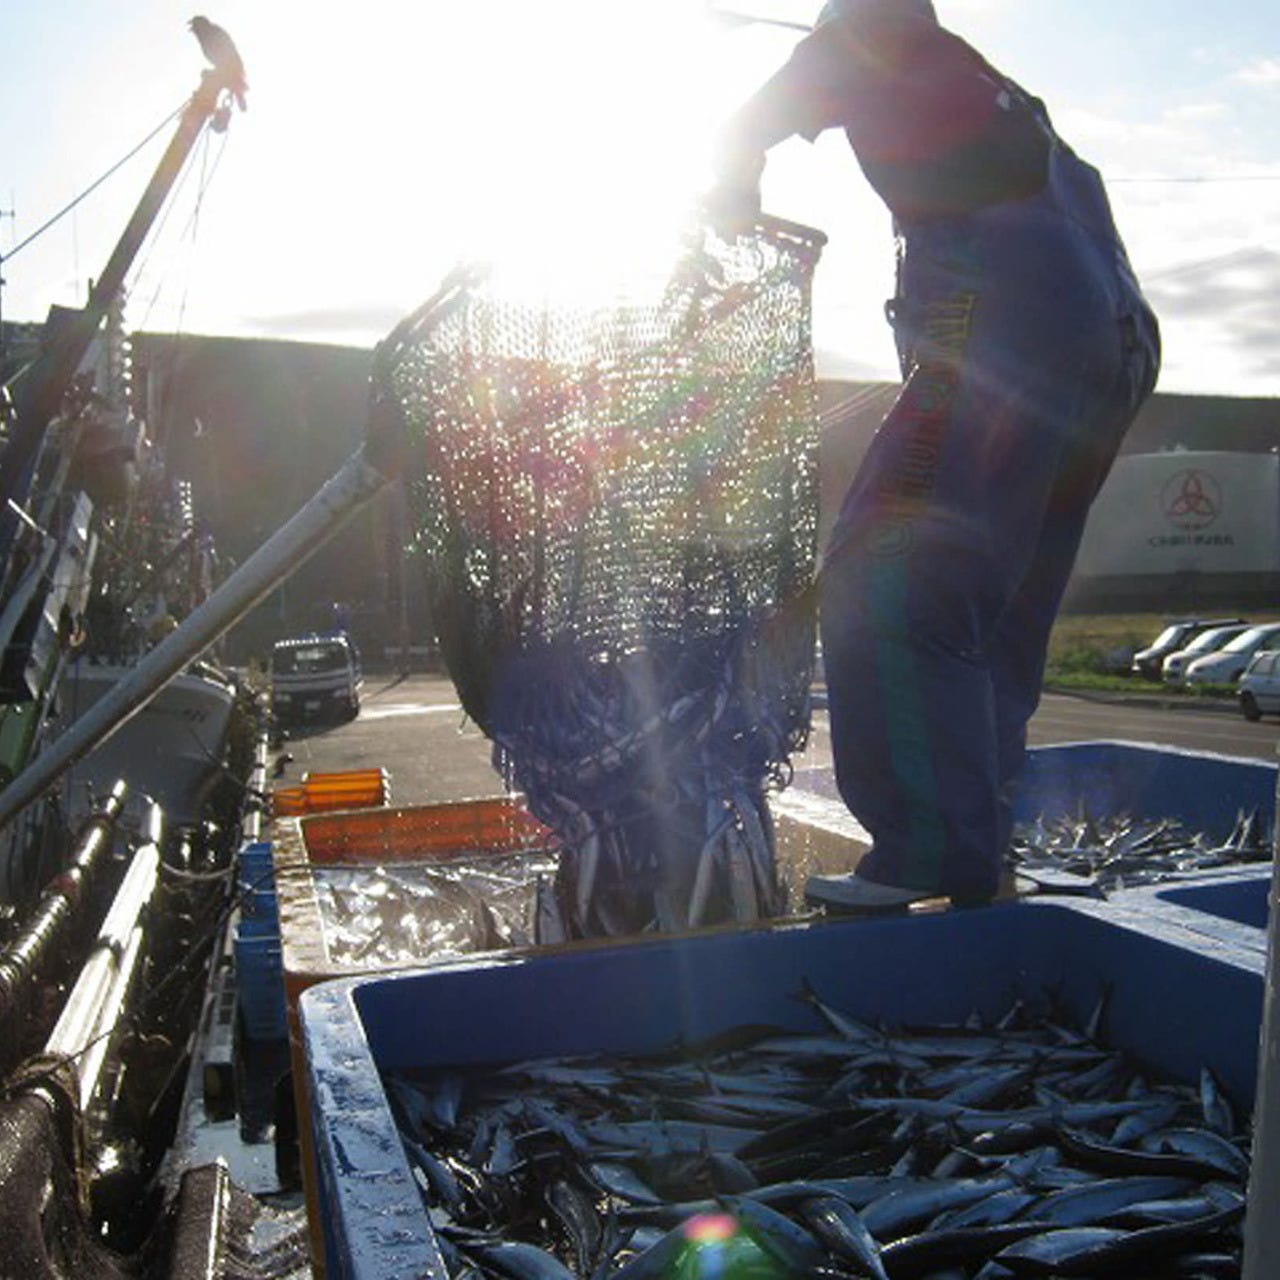 明石の魚の棚、昼網でとれた新鮮な魚介をそのままに贅の極み。